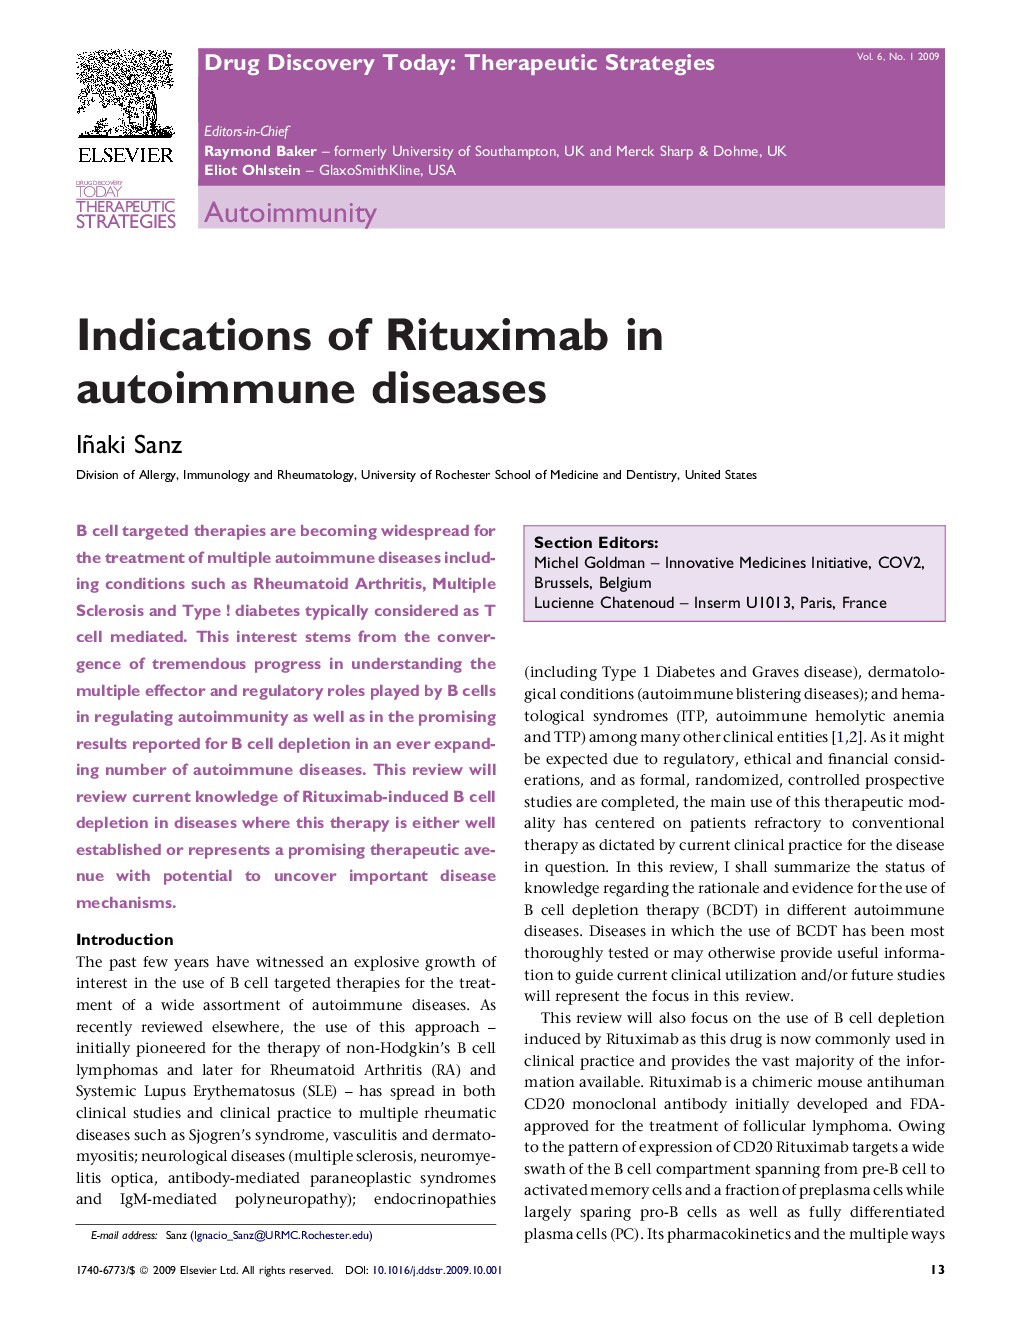 Indications of Rituximab in autoimmune diseases